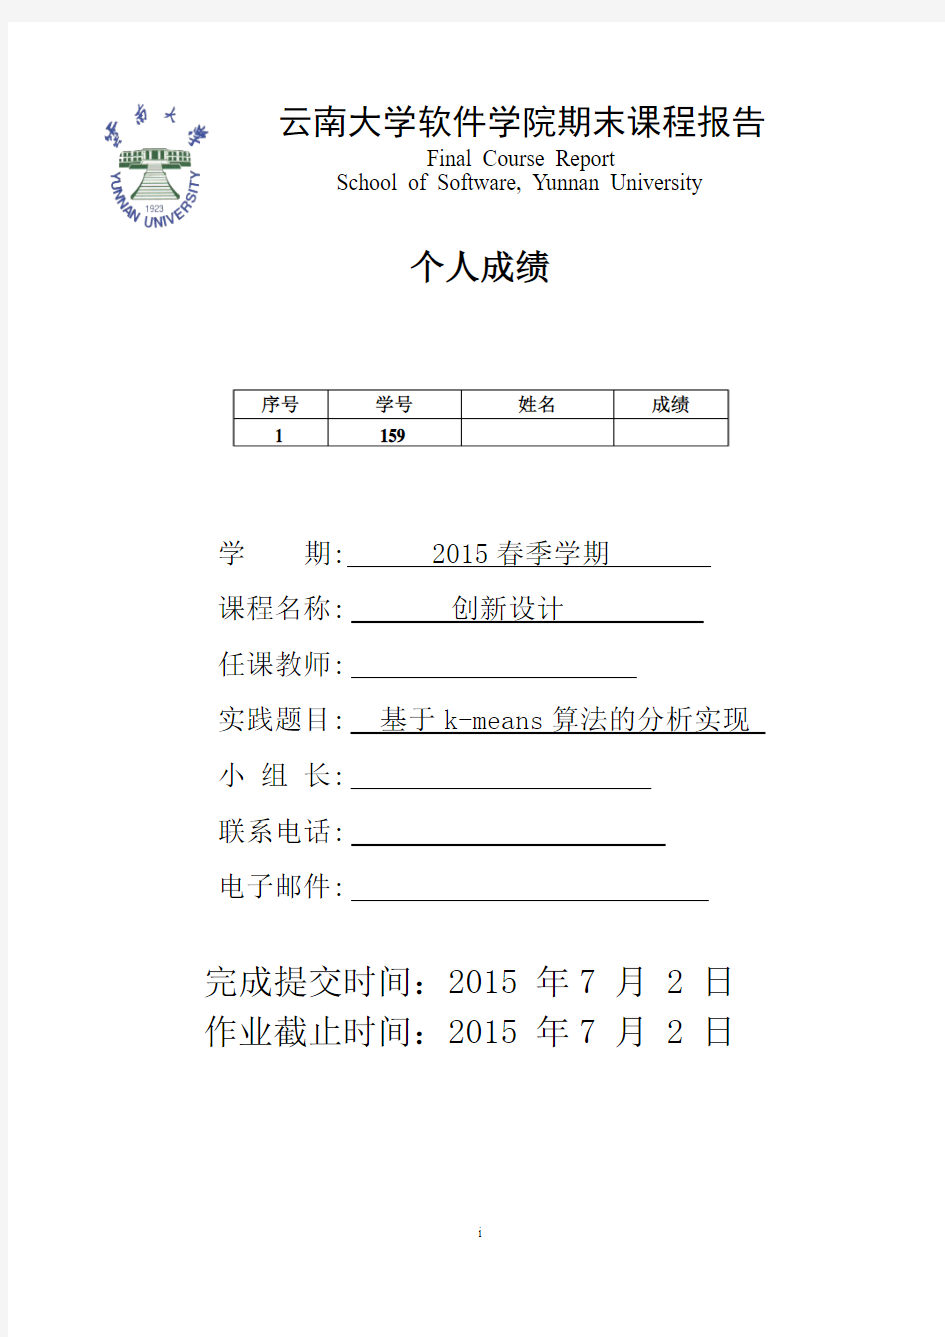 创新设计云南大学软件学院期末课程报告